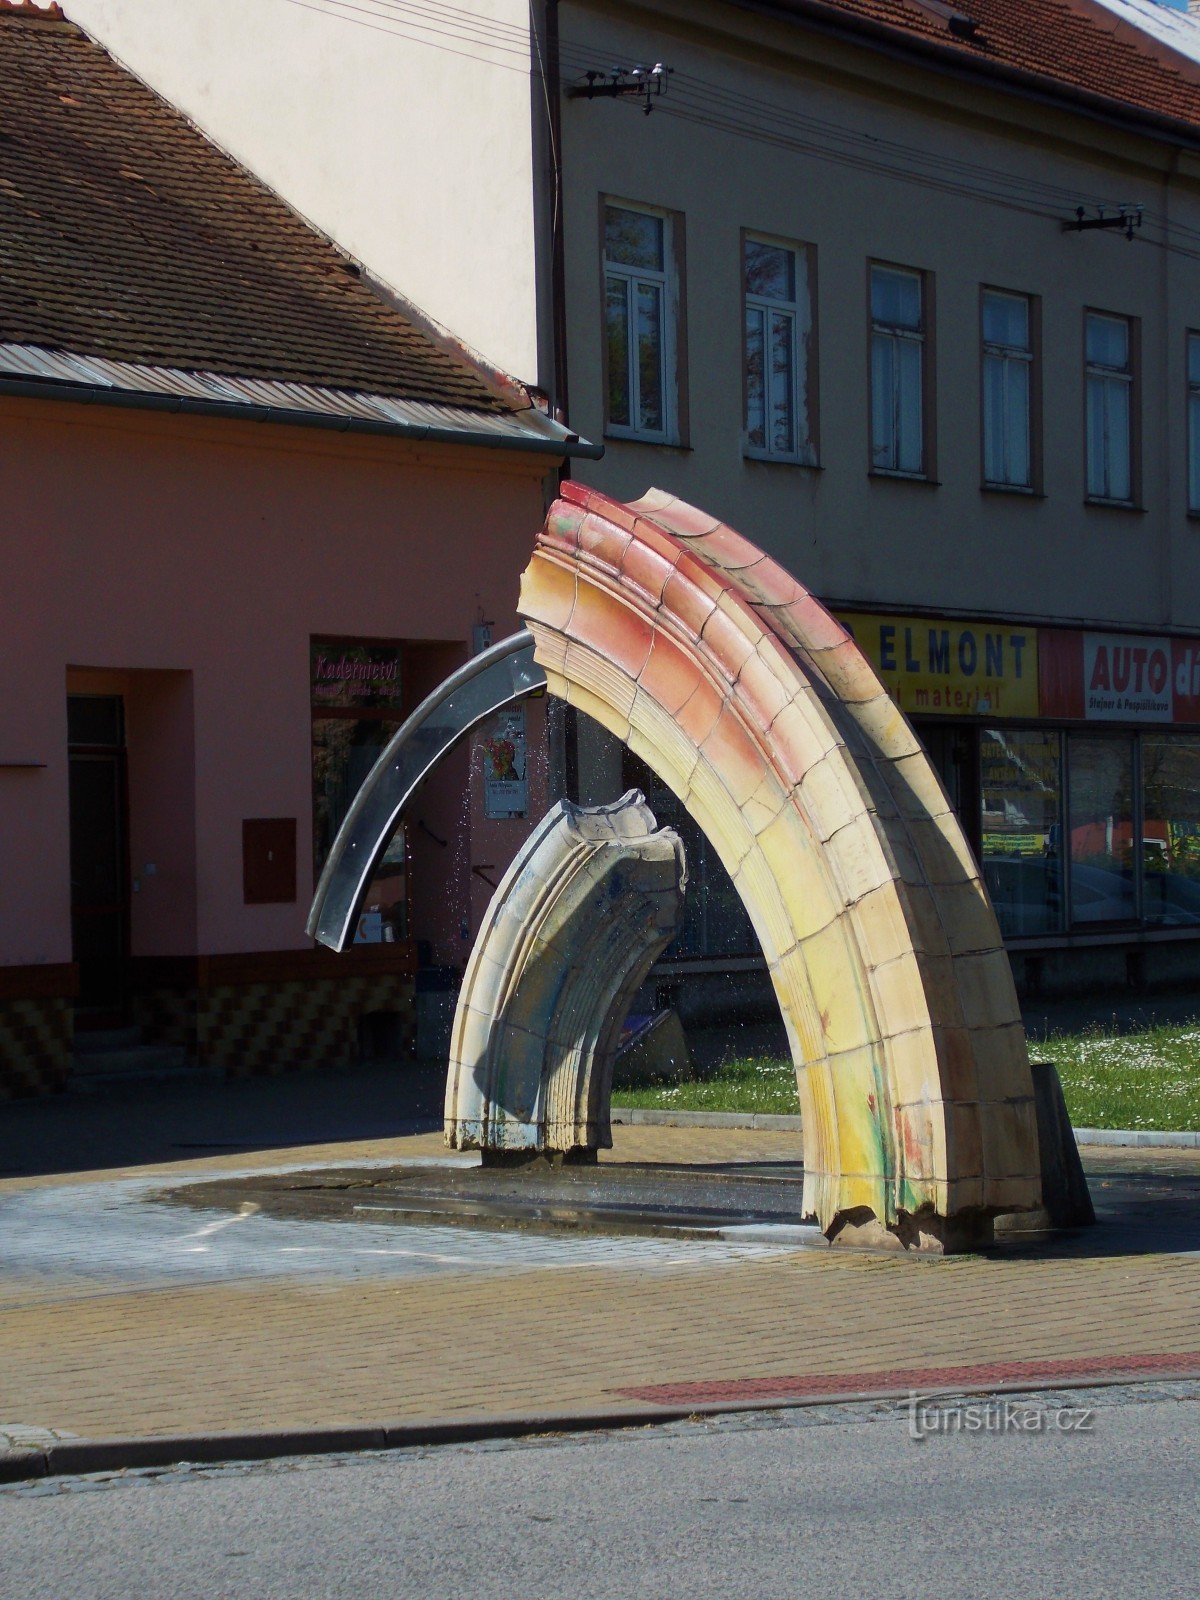 Două fântâni - decorațiuni ale orașului în Bystřice pod Hostýnem